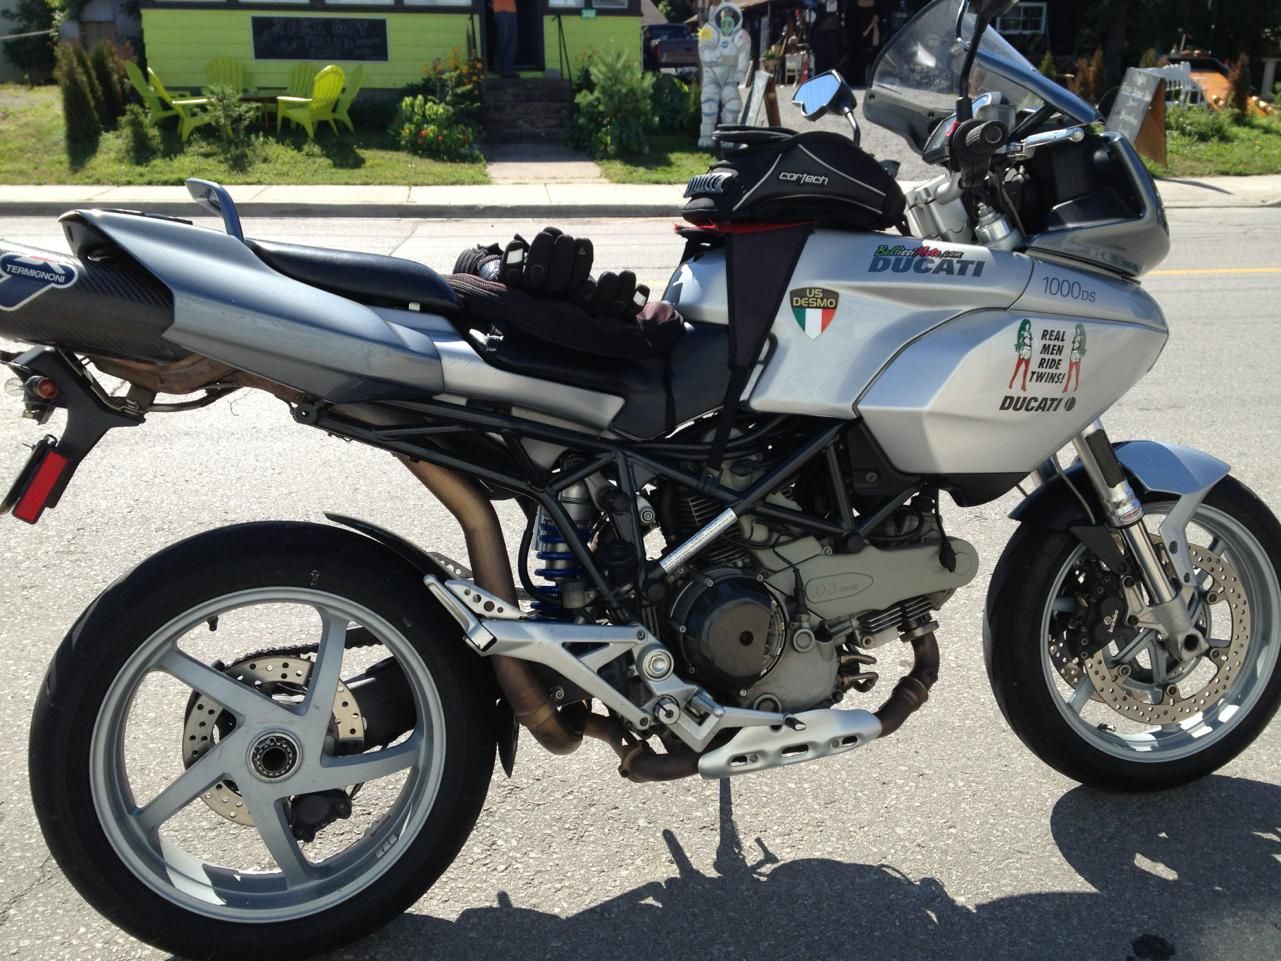  Ducati 1000 DS